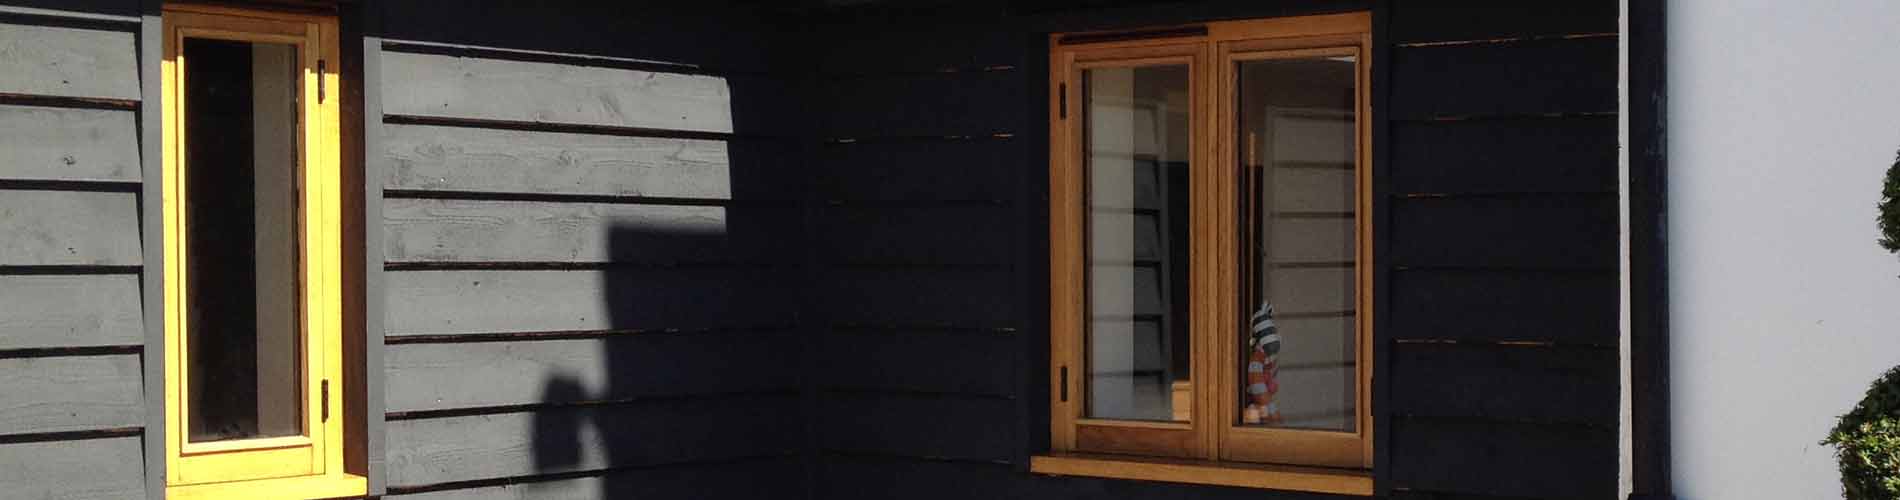 casement window joinery